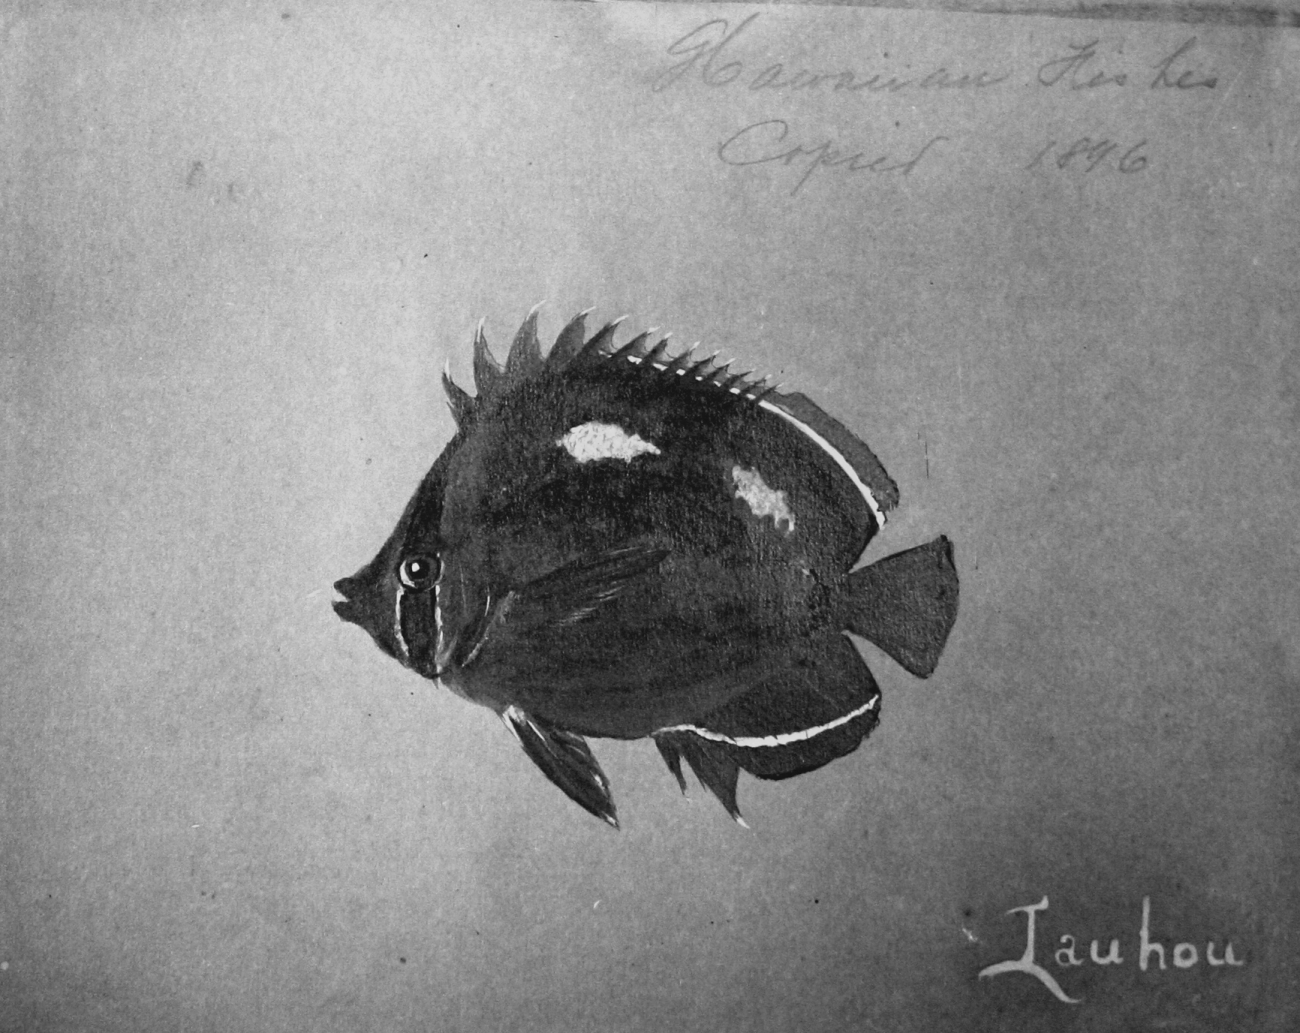 Hawaiian fishes, 1896, Iauhou